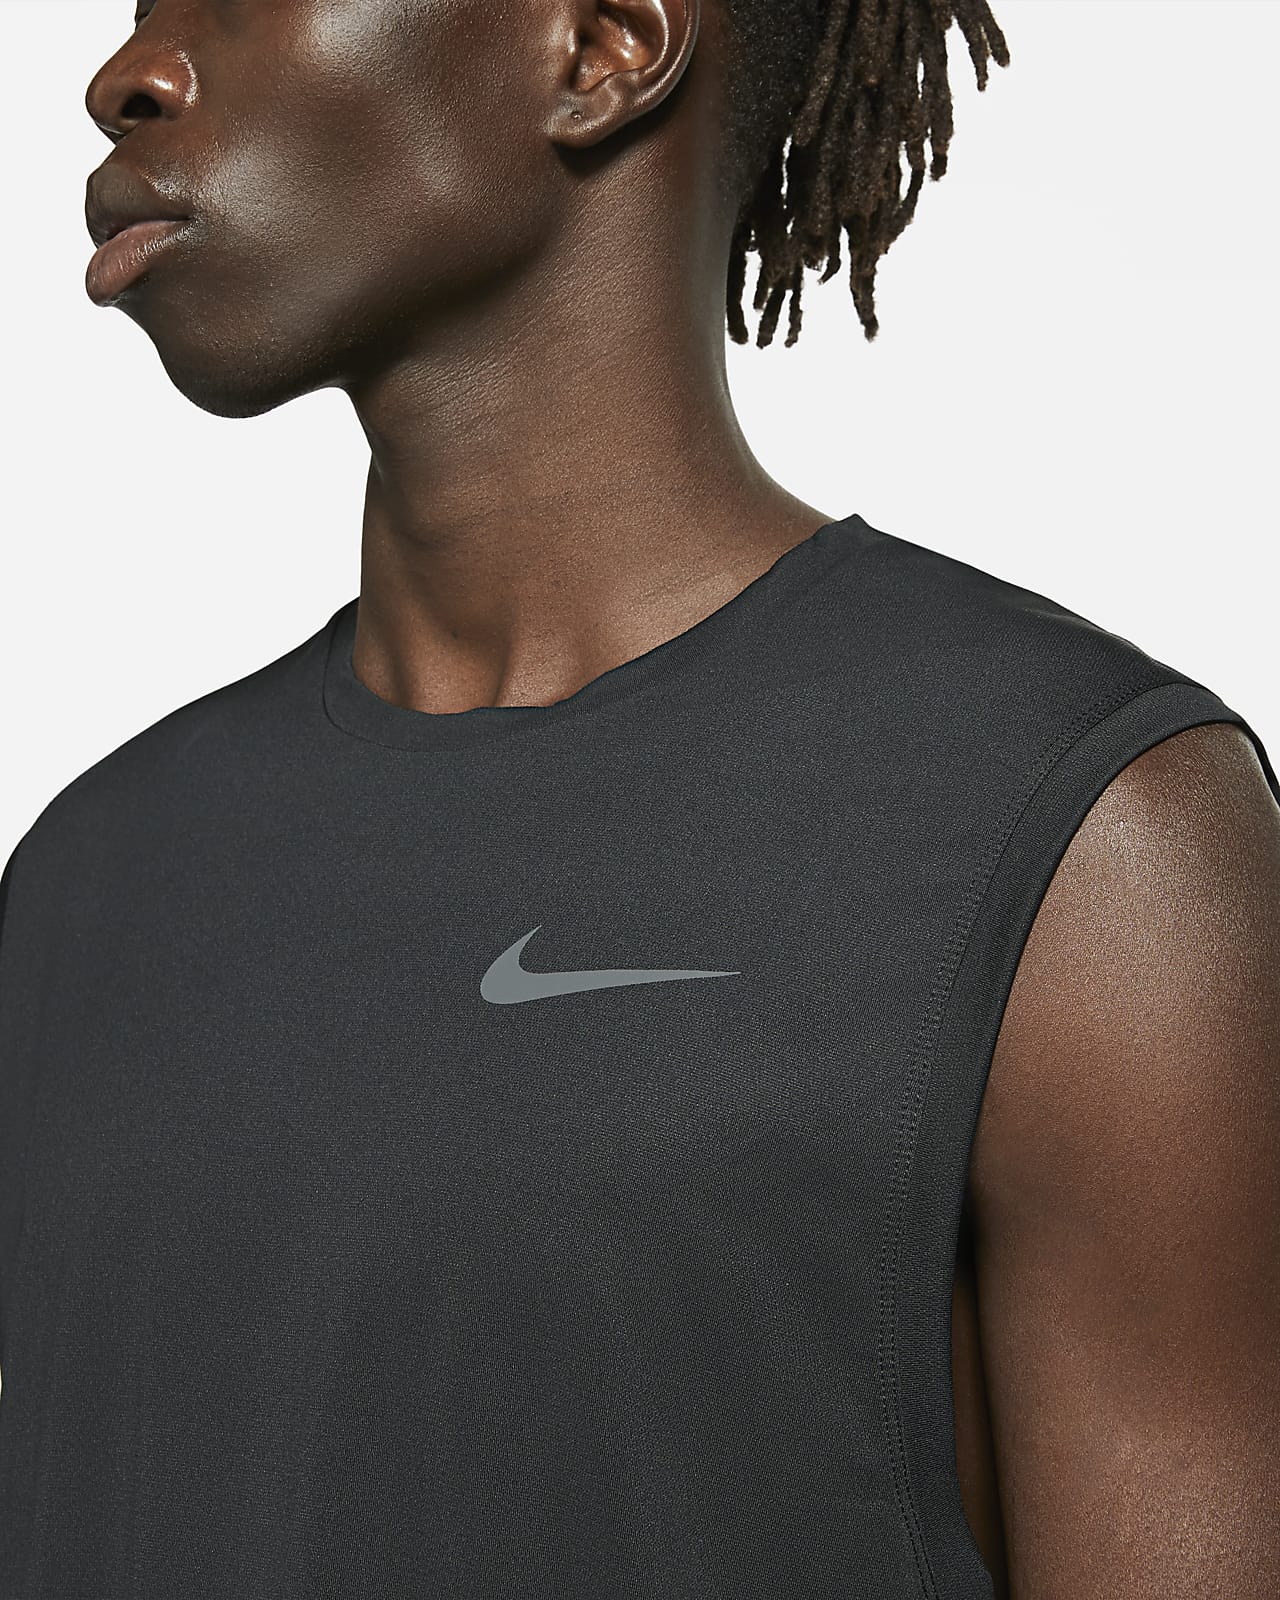 Nike Pro Men's Dri-FIT Sleeveless Tank Top CZ1184-010 Black 